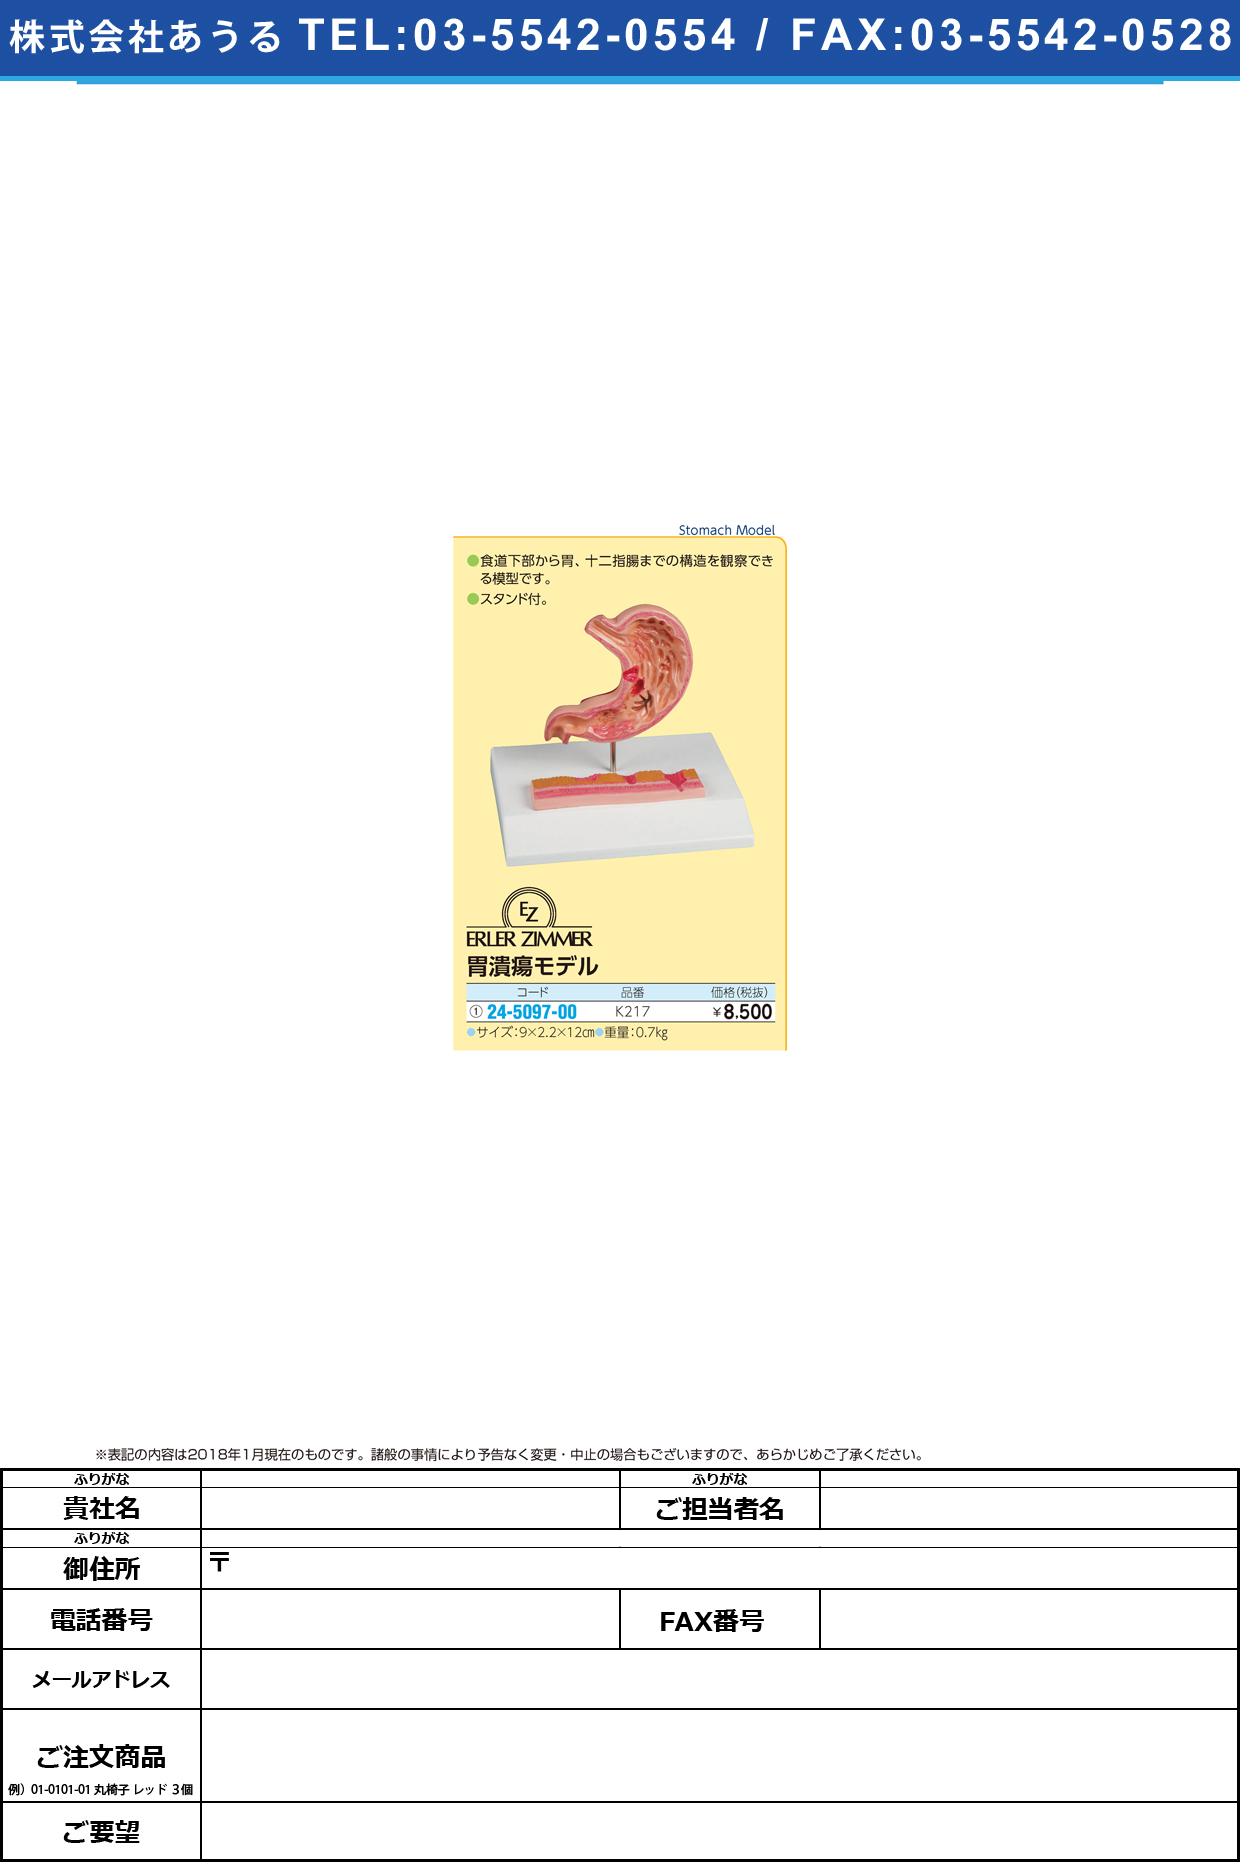 (24-5097-00)胃潰瘍モデル K217 ｲｶｲﾖｳﾓﾃﾞﾙ(エルラージーマー社)【1個単位】【2019年カタログ商品】